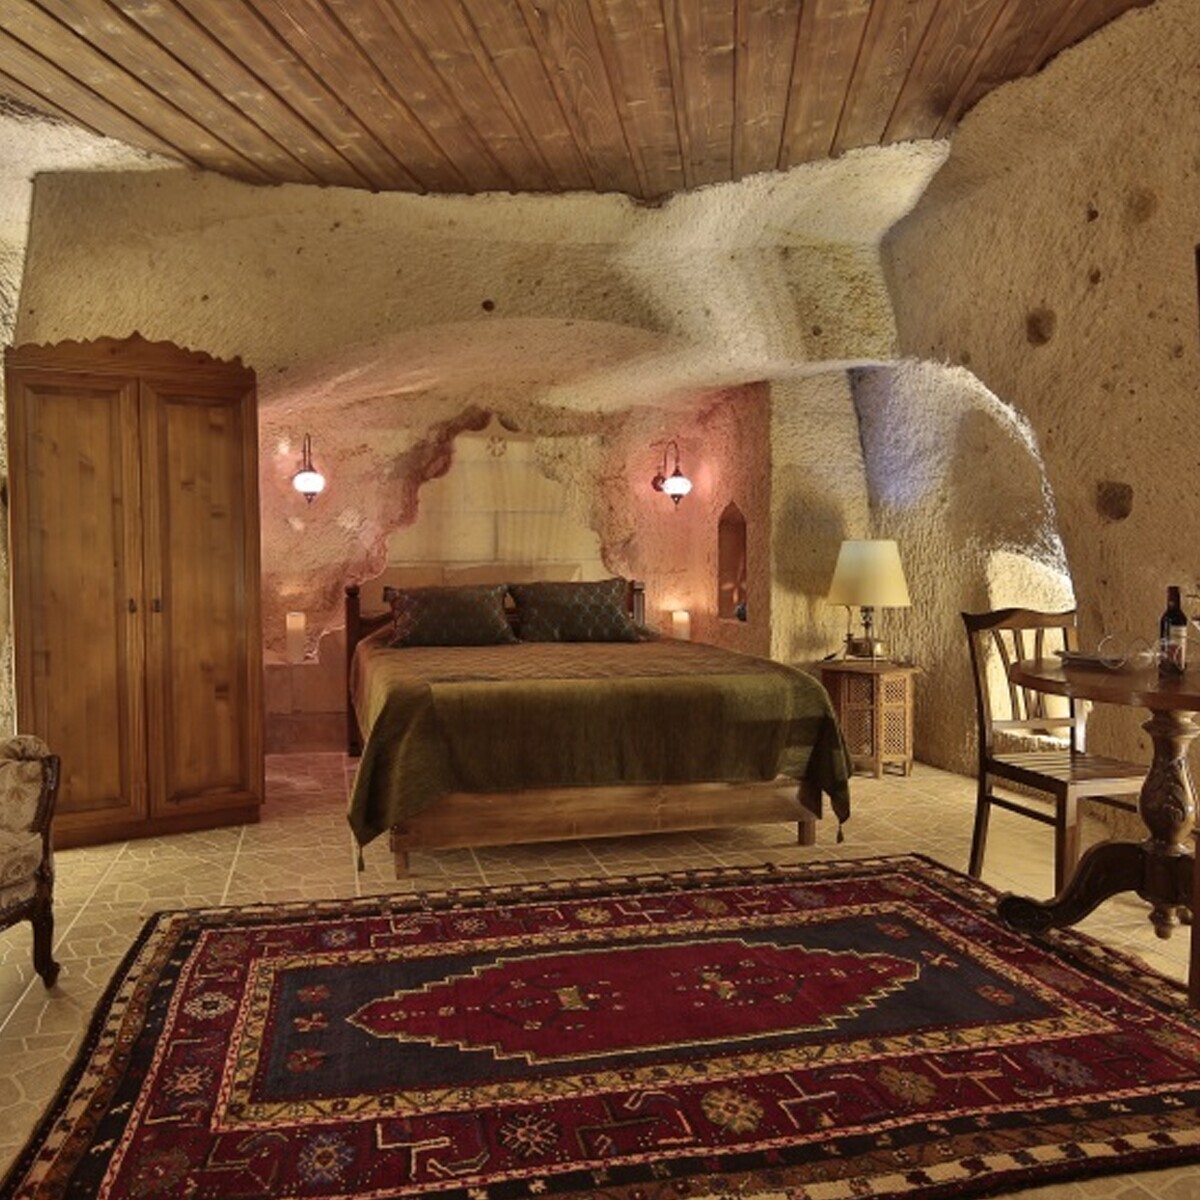 Kapadokya Turkish Cave House Hotel'de Çift Kişi 1 Gece Konaklama Seçenekleri